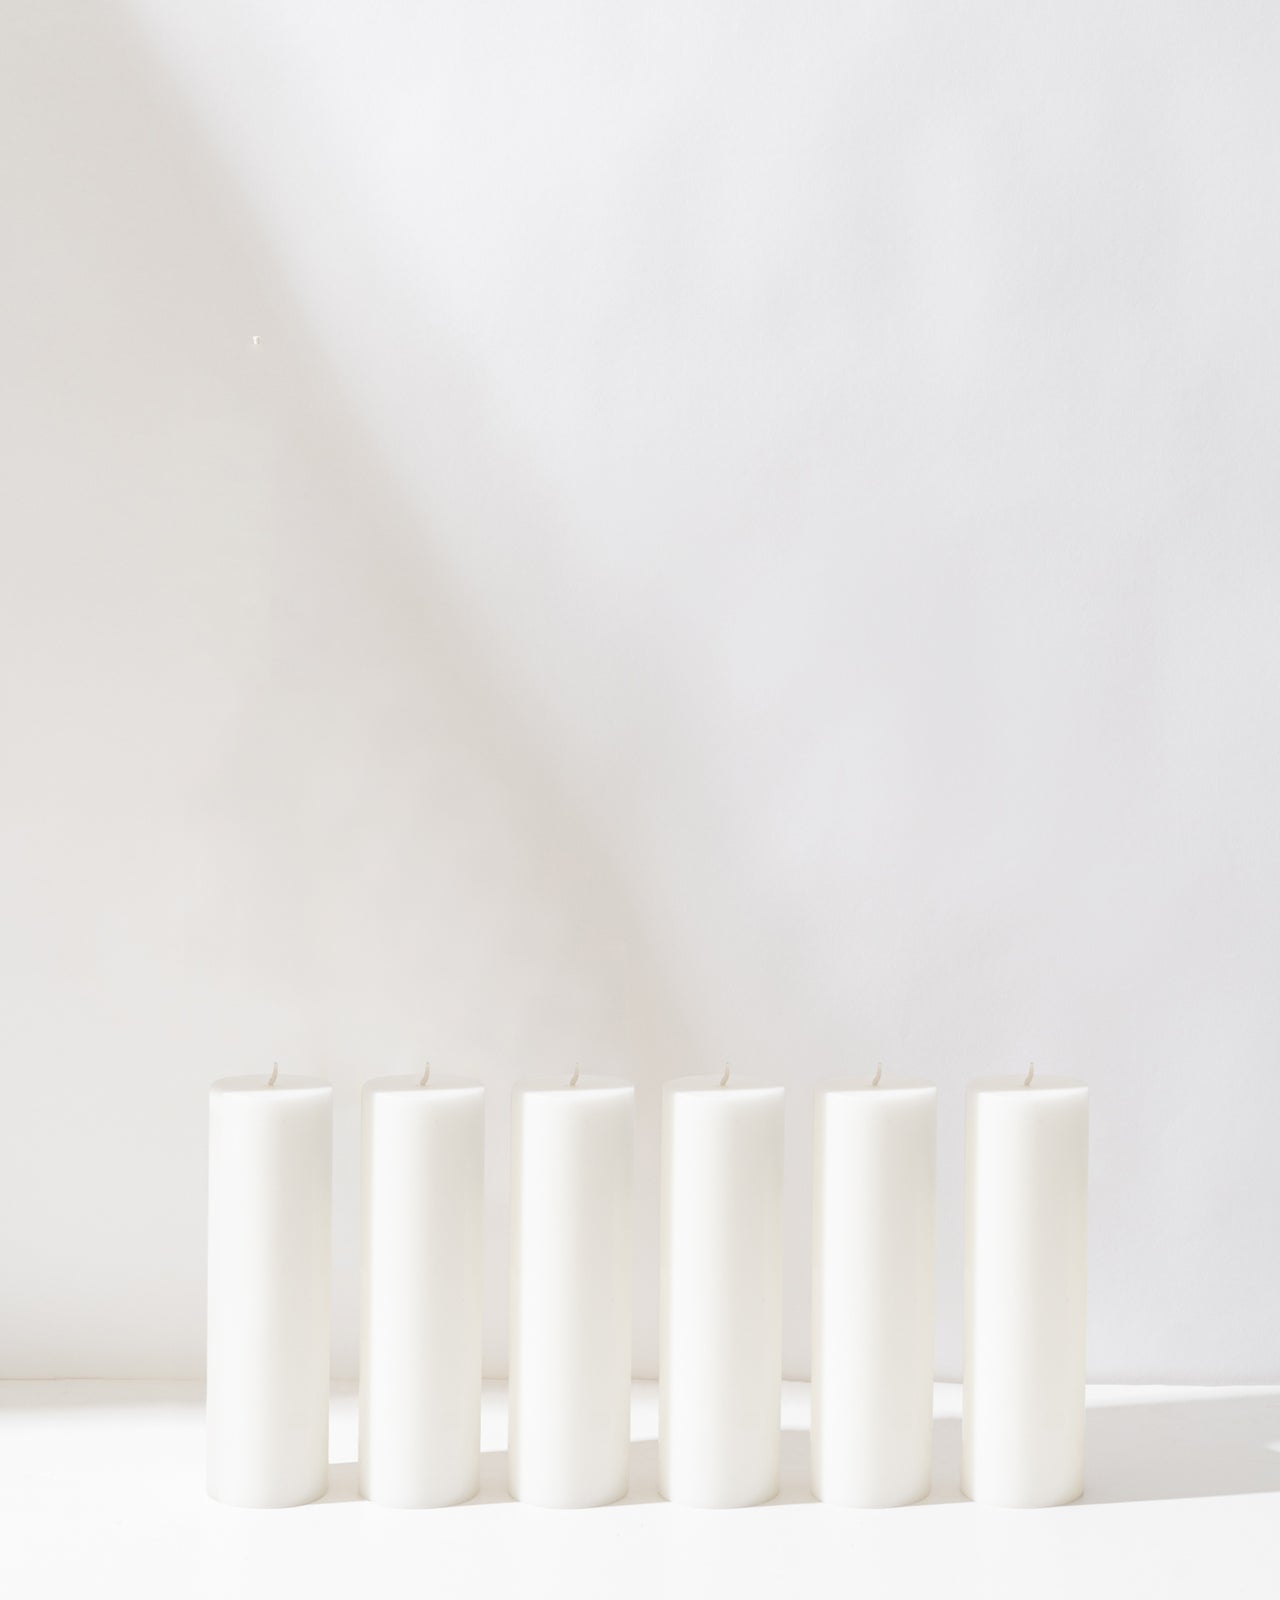 20cm Pillar Bundle (10 candles)